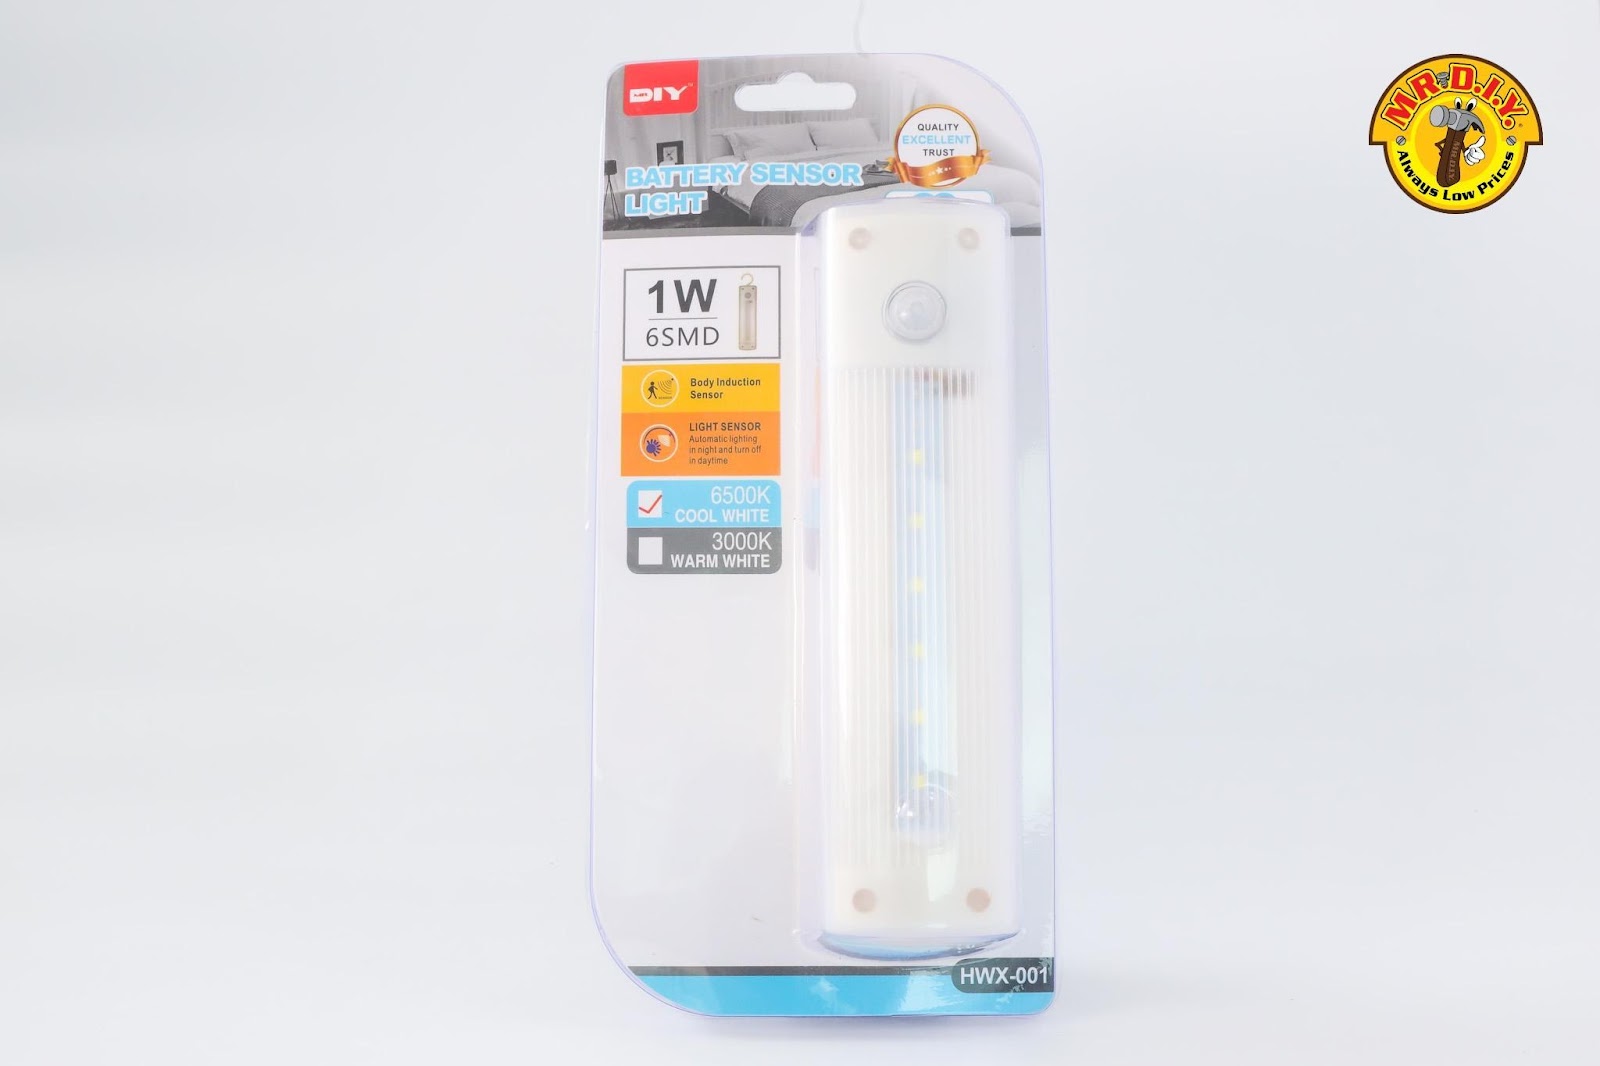 Portable Mini USB LED Light - Mr Diy Store